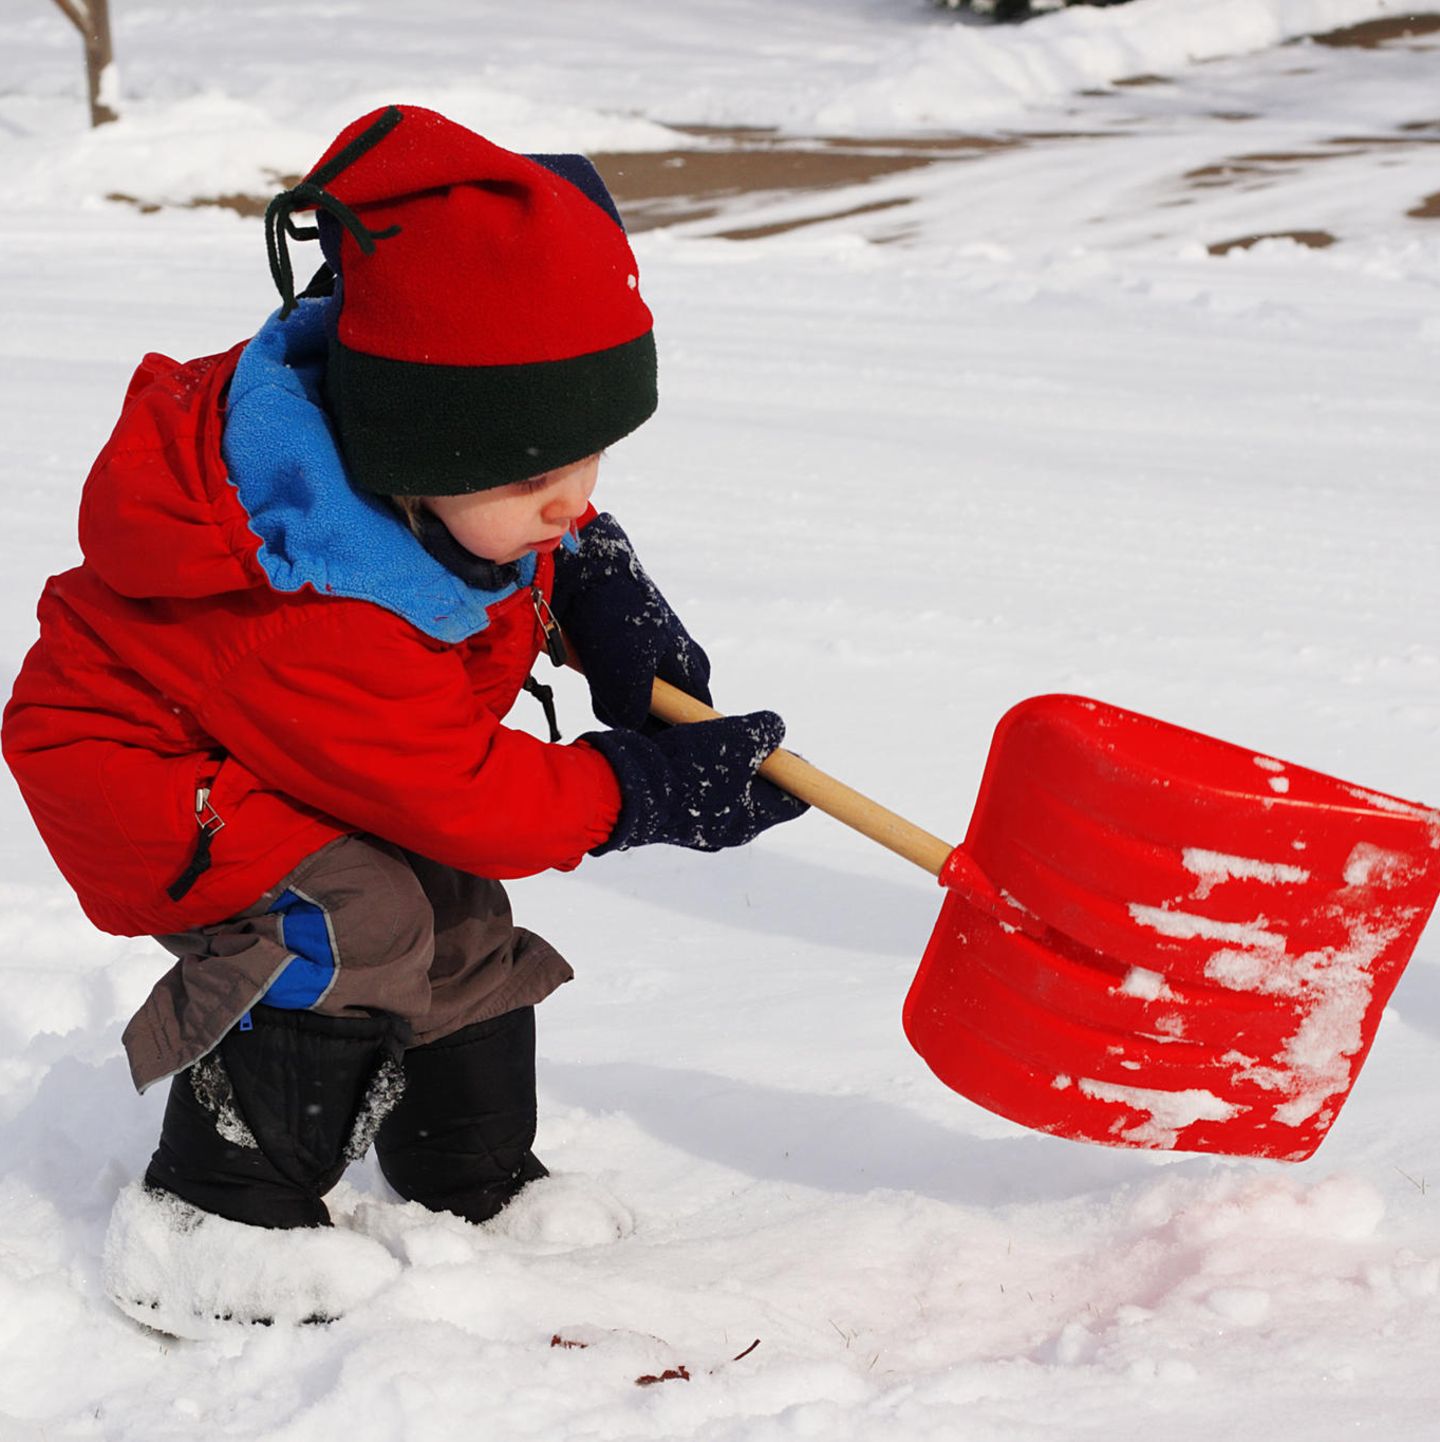 Kind mit Stiefeln im Schnee mit Schippe